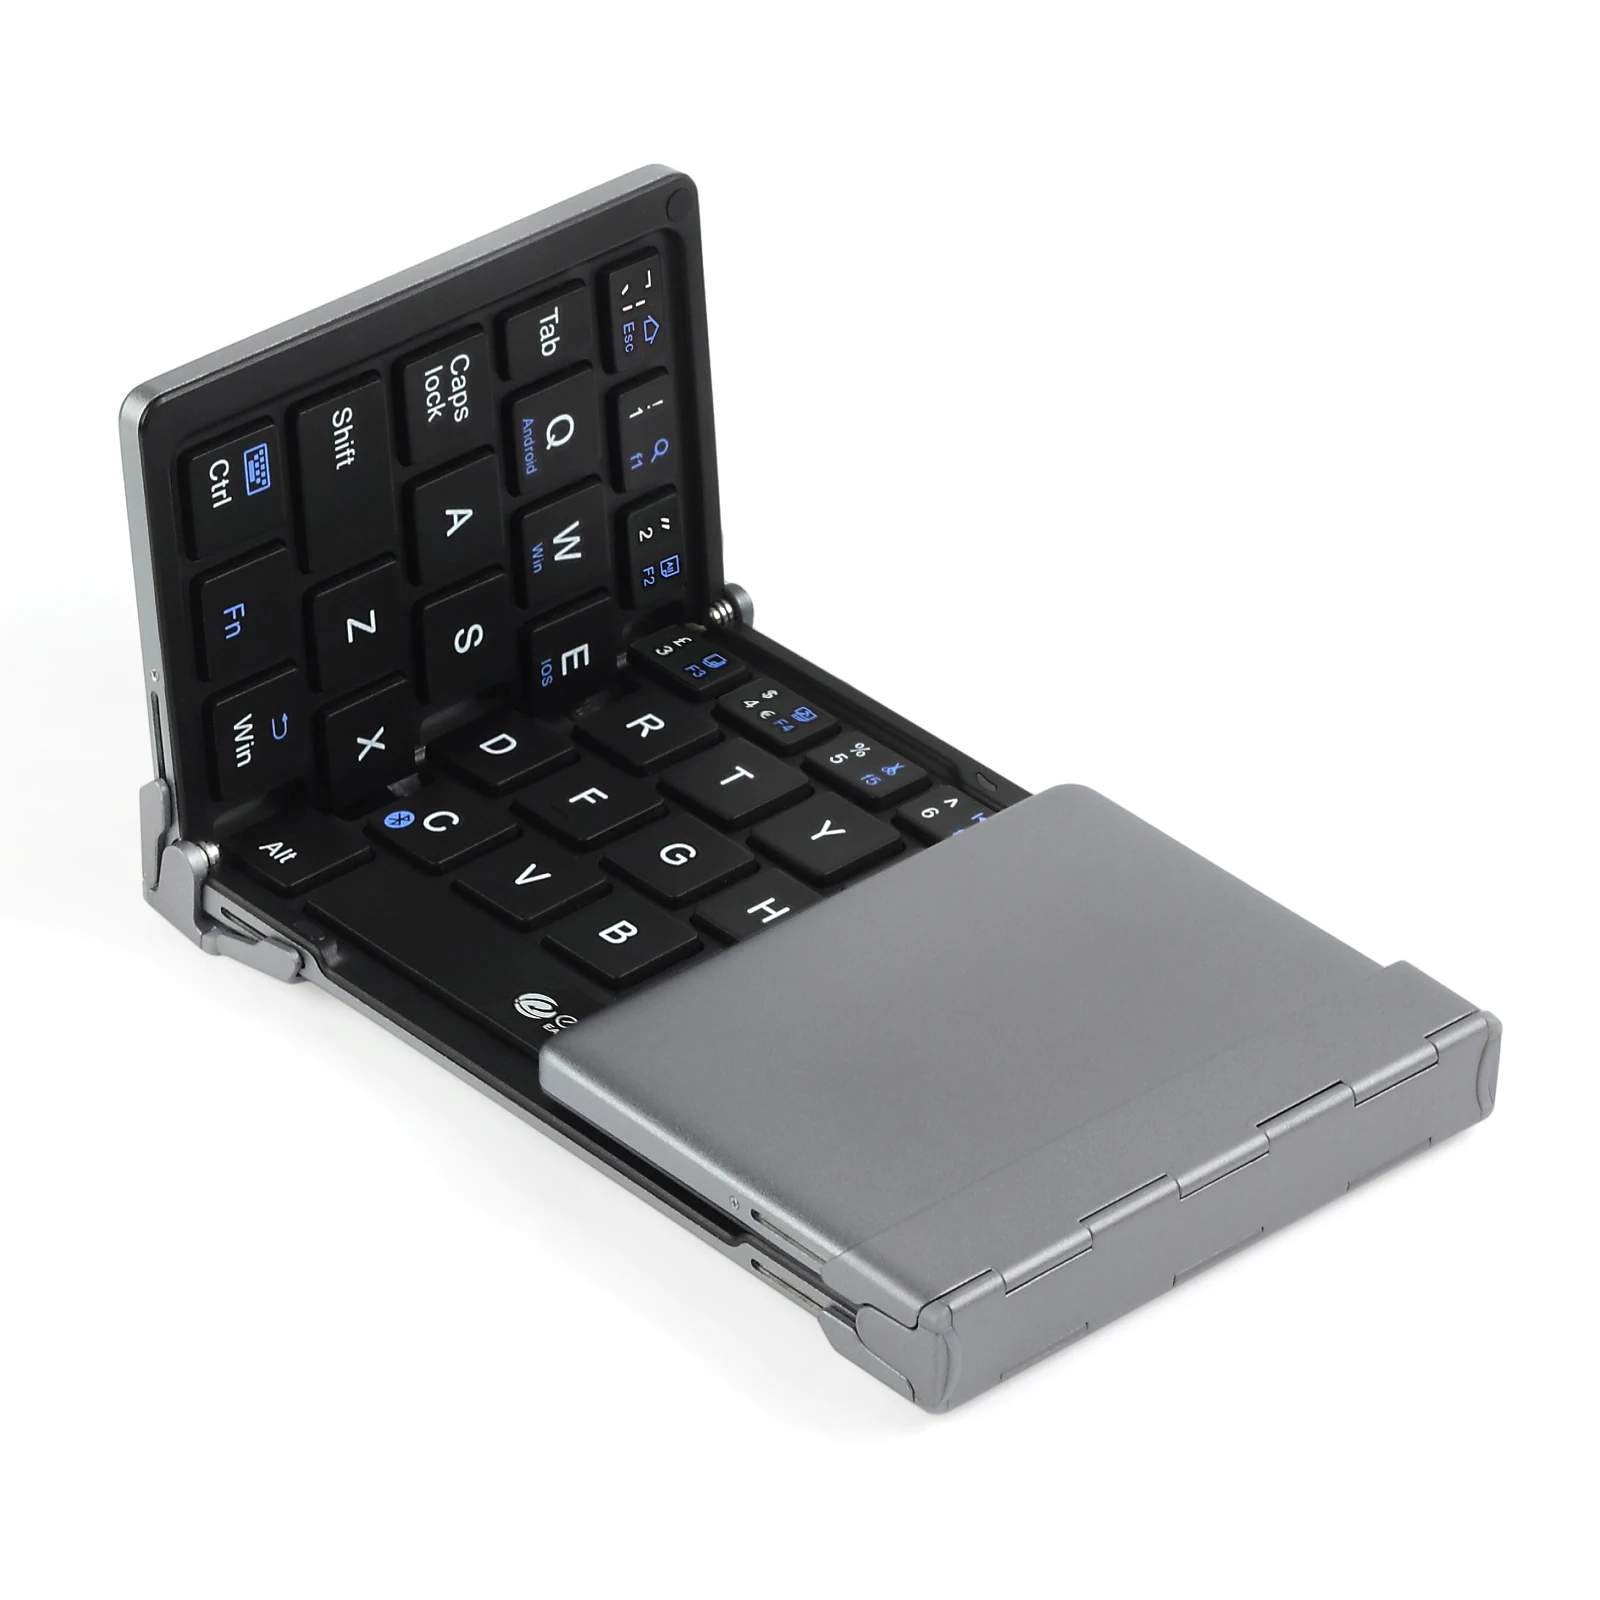 ESYNiC итальянский беспроводной интерфейс Bluetooth клавиатура для IOS Android Windows планшет гибкая складная клавиатура